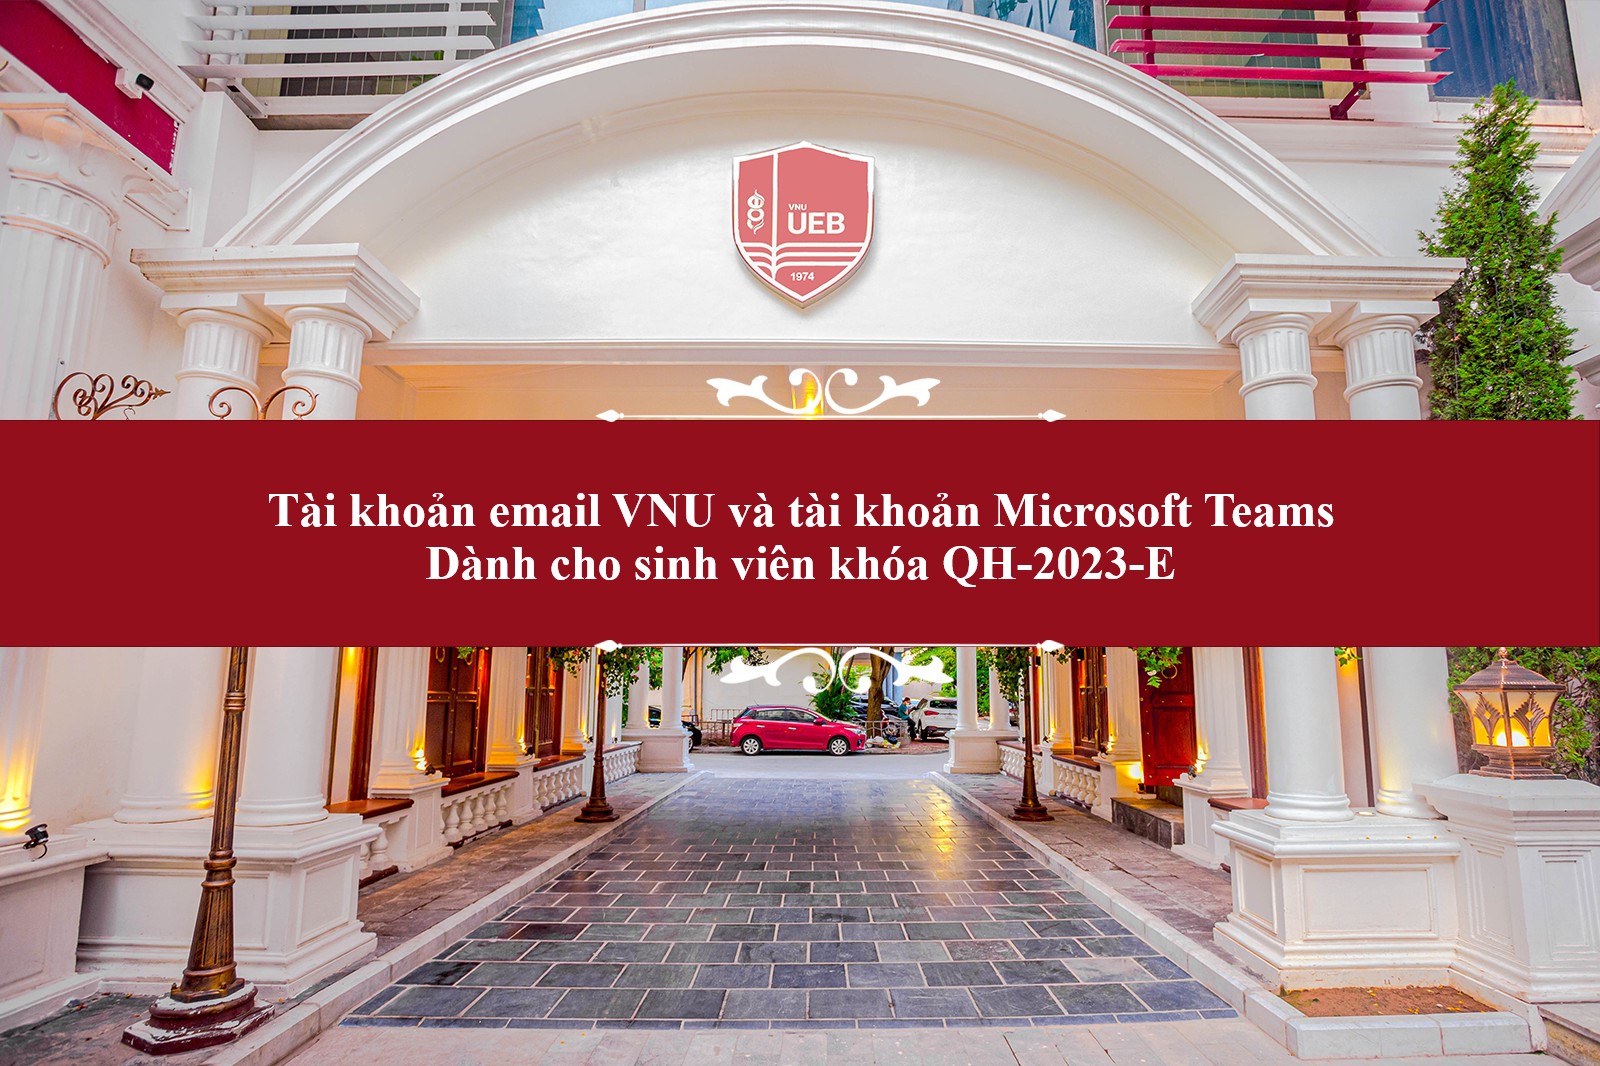 Tài khoản email VNU và tài khoản Microsoft Teams dành cho tân sinh viên khóa QH-2023-E